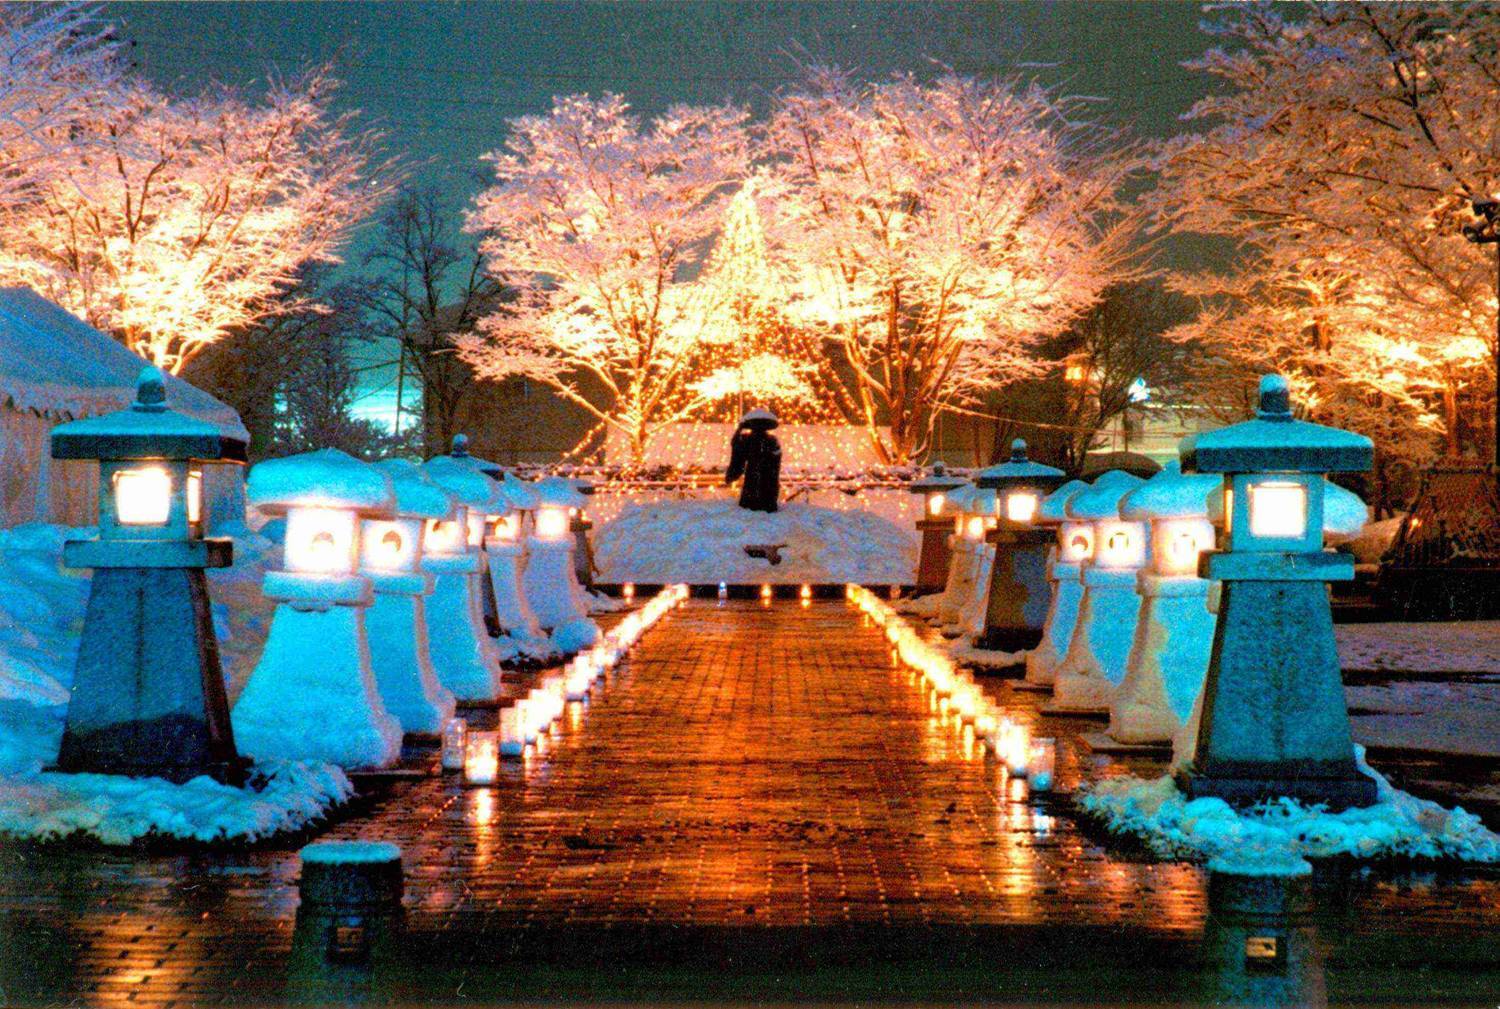 夜になると幻想的な雰囲気を醸す雪見灯篭